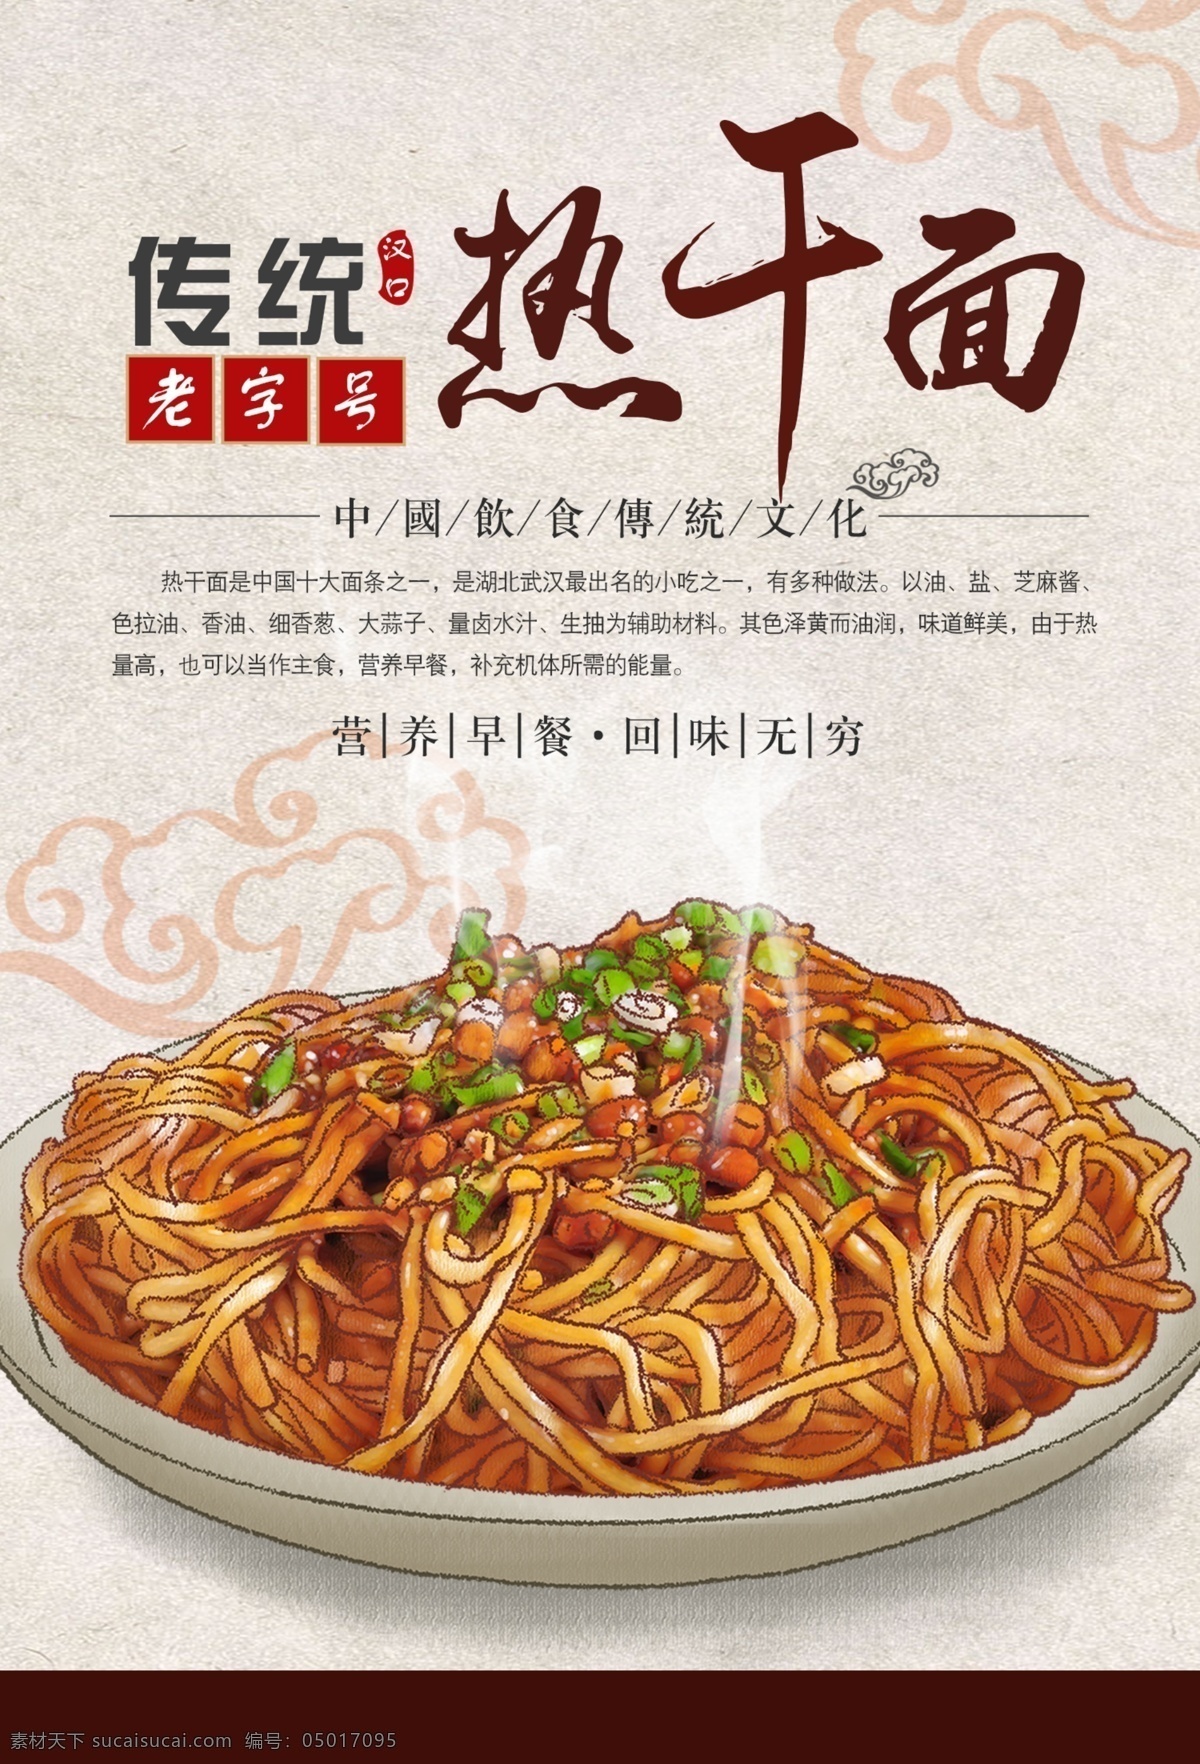 武汉 热 干面 美食 食 材 宣传海报 武汉热干面 食材 宣传 海报 餐饮美食 类